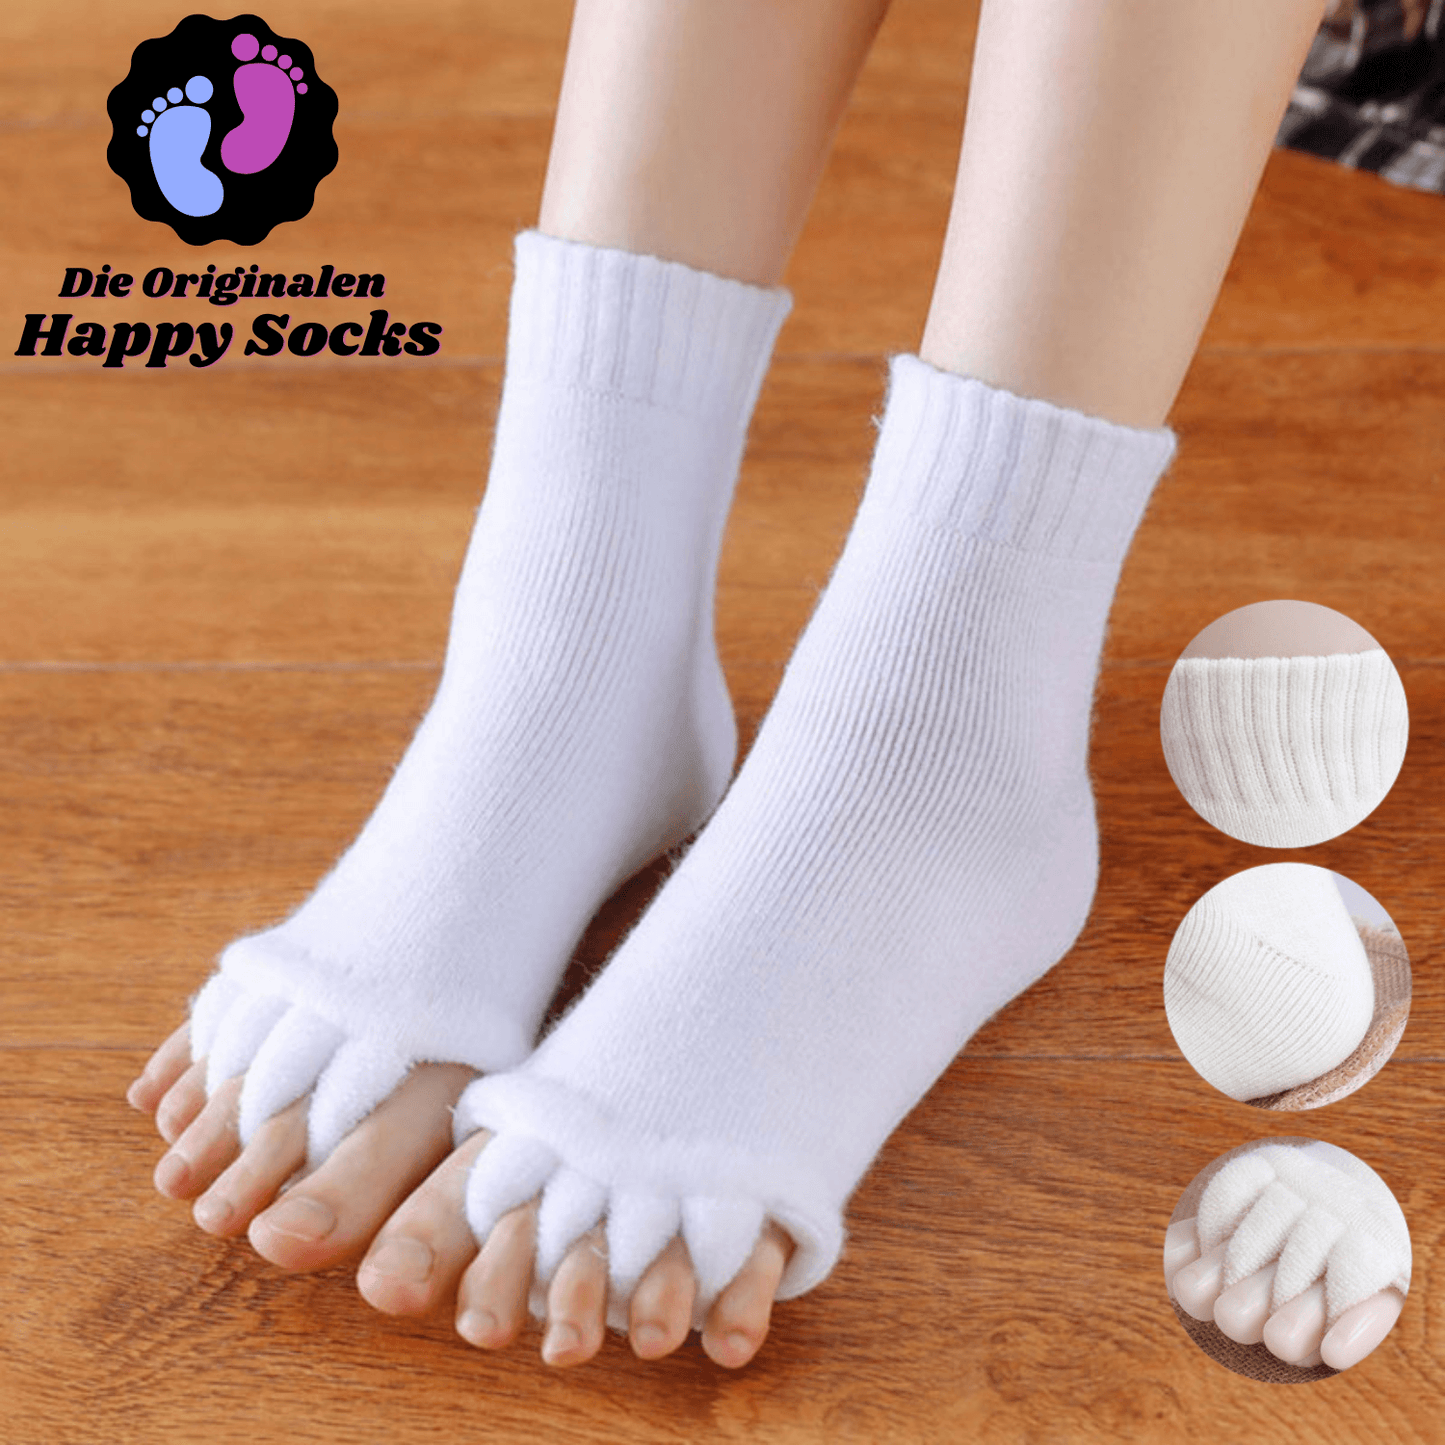 Happy Socks - Nie wieder Fuß Beschwerden!